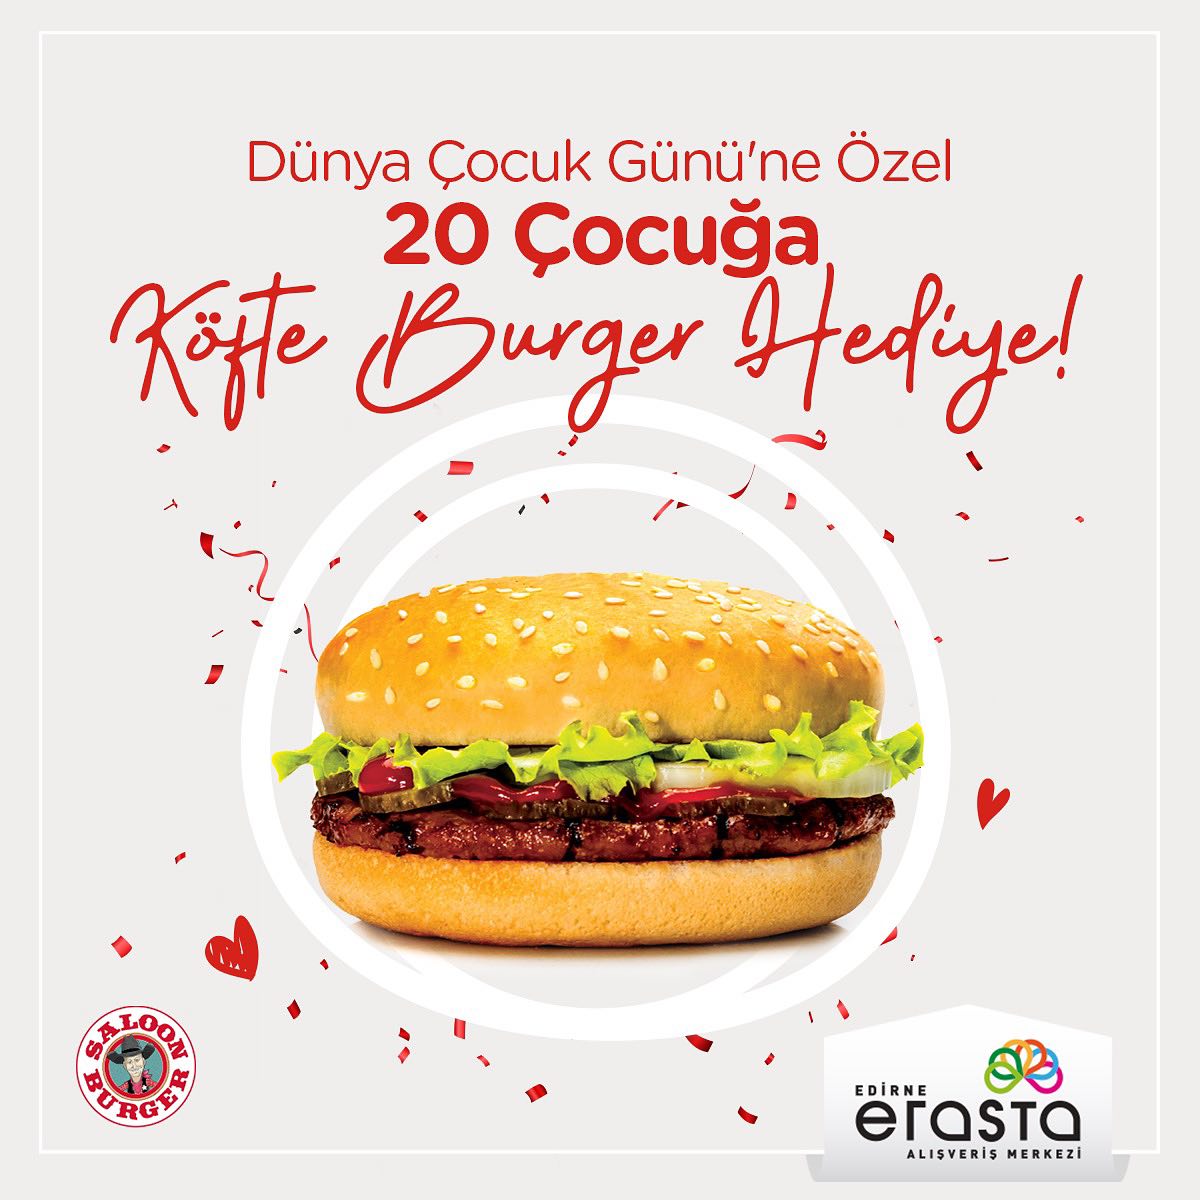 Dünya Çocuk Günü’ne Özel 20 Çocuğa Köfte Burger Hediyesi!